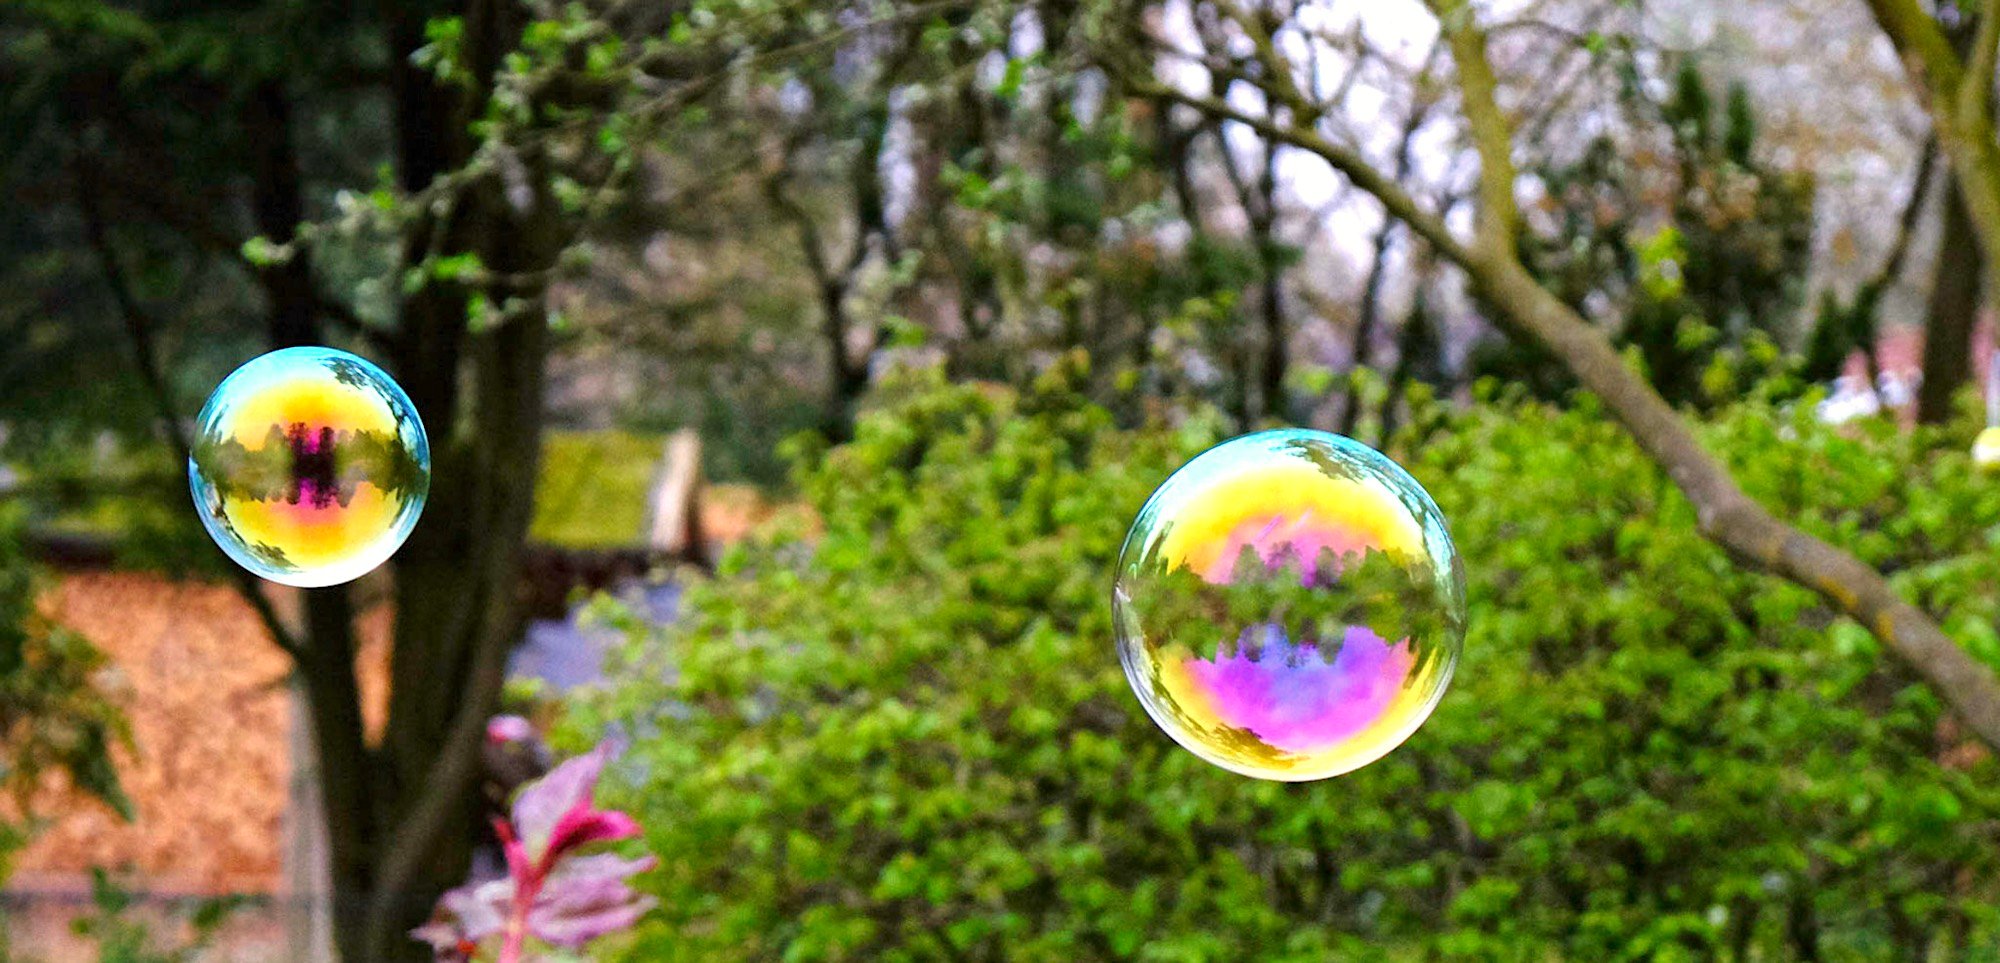 Schönes Bild von bunten Seifenblasen draußen im Grünen